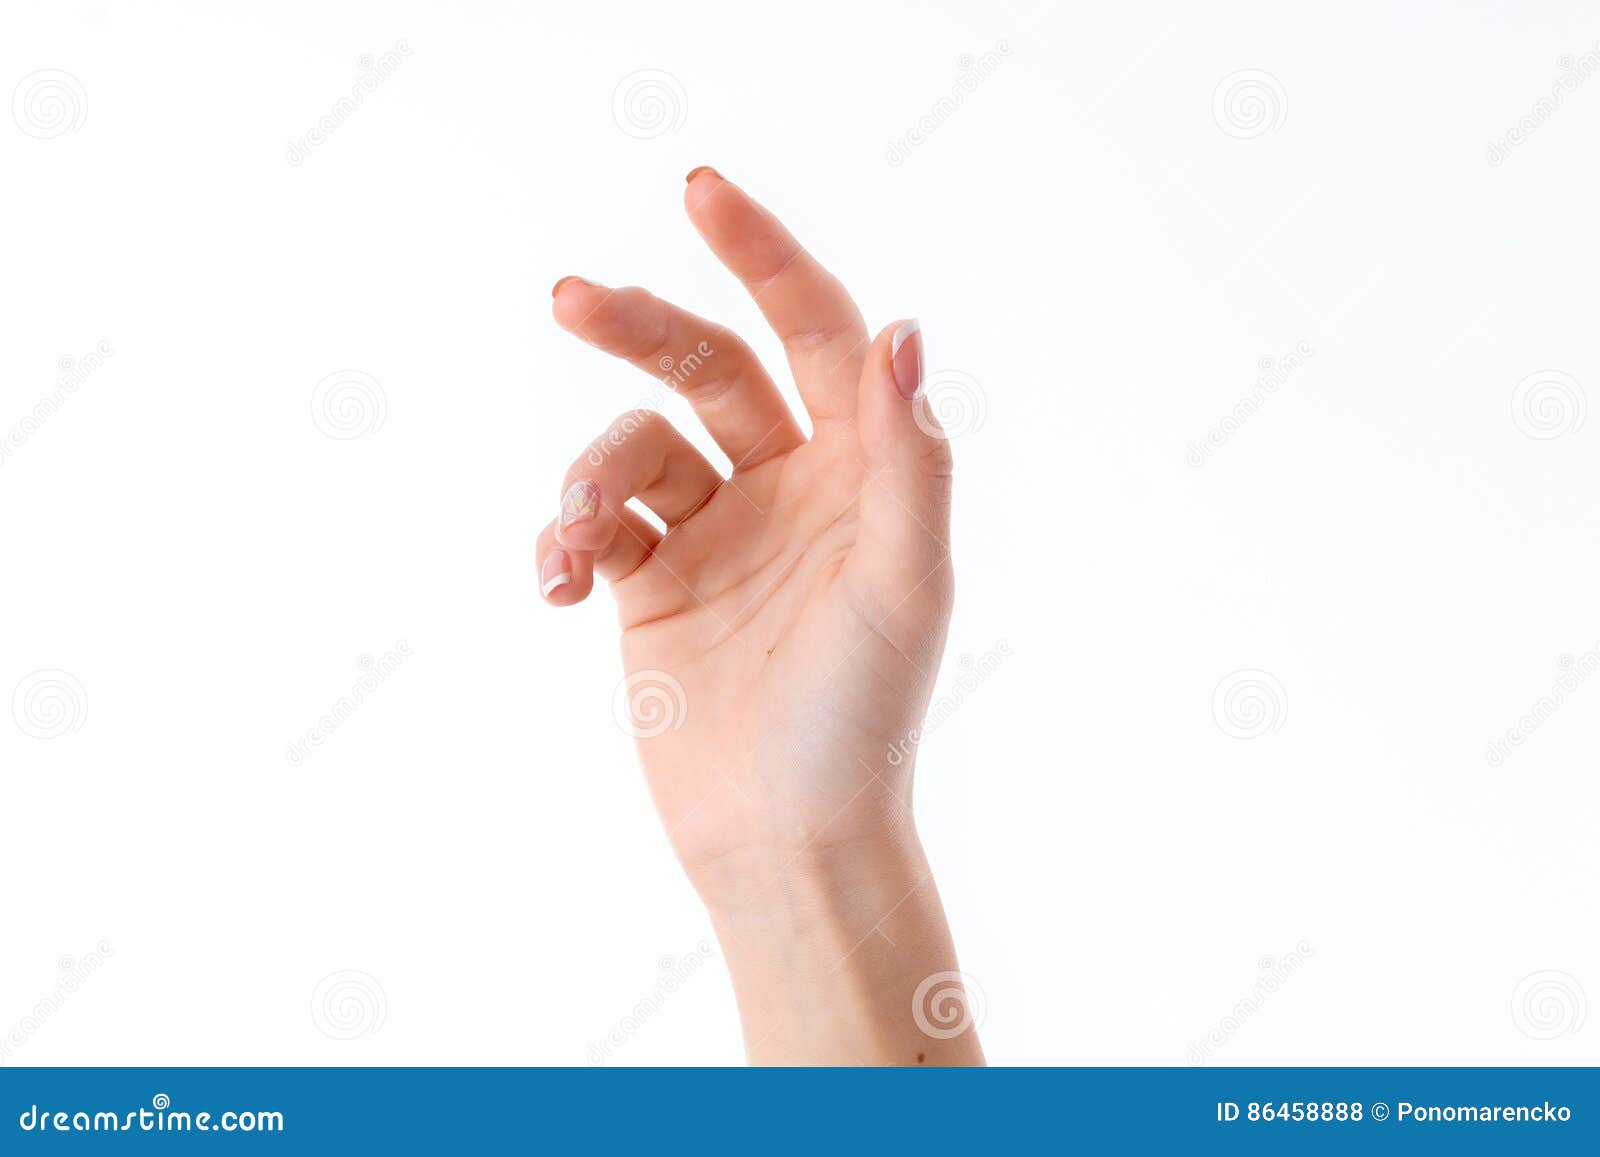 Расслабленные пальцы рук. Рука с загнутыми пальцами. Согнутые женские руки. Женские пальцы рук. Женские руки с загнутым указательным пальцем.